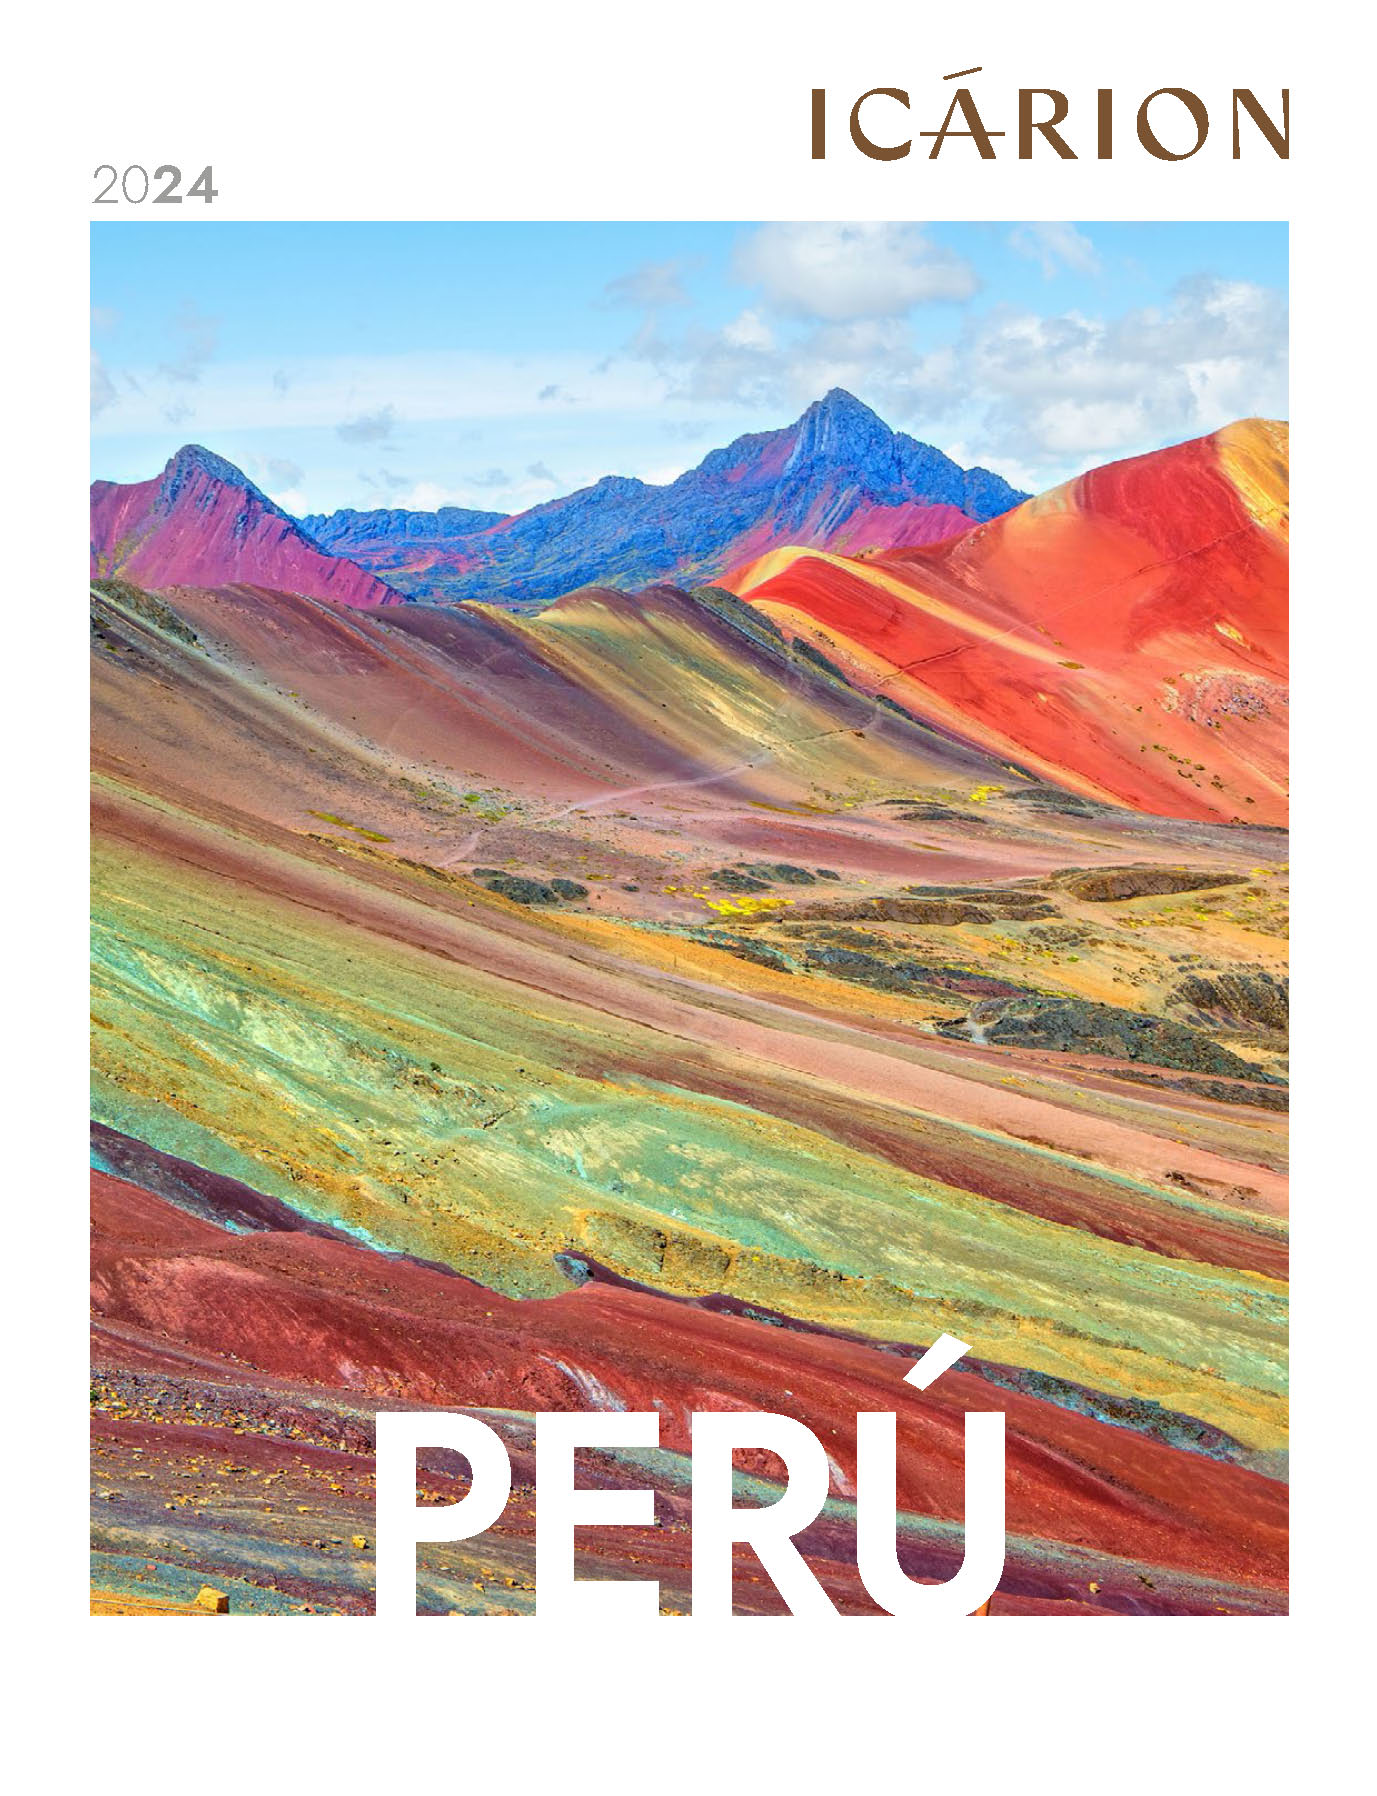 Catalogo Icarion Circuitos Peru 2024